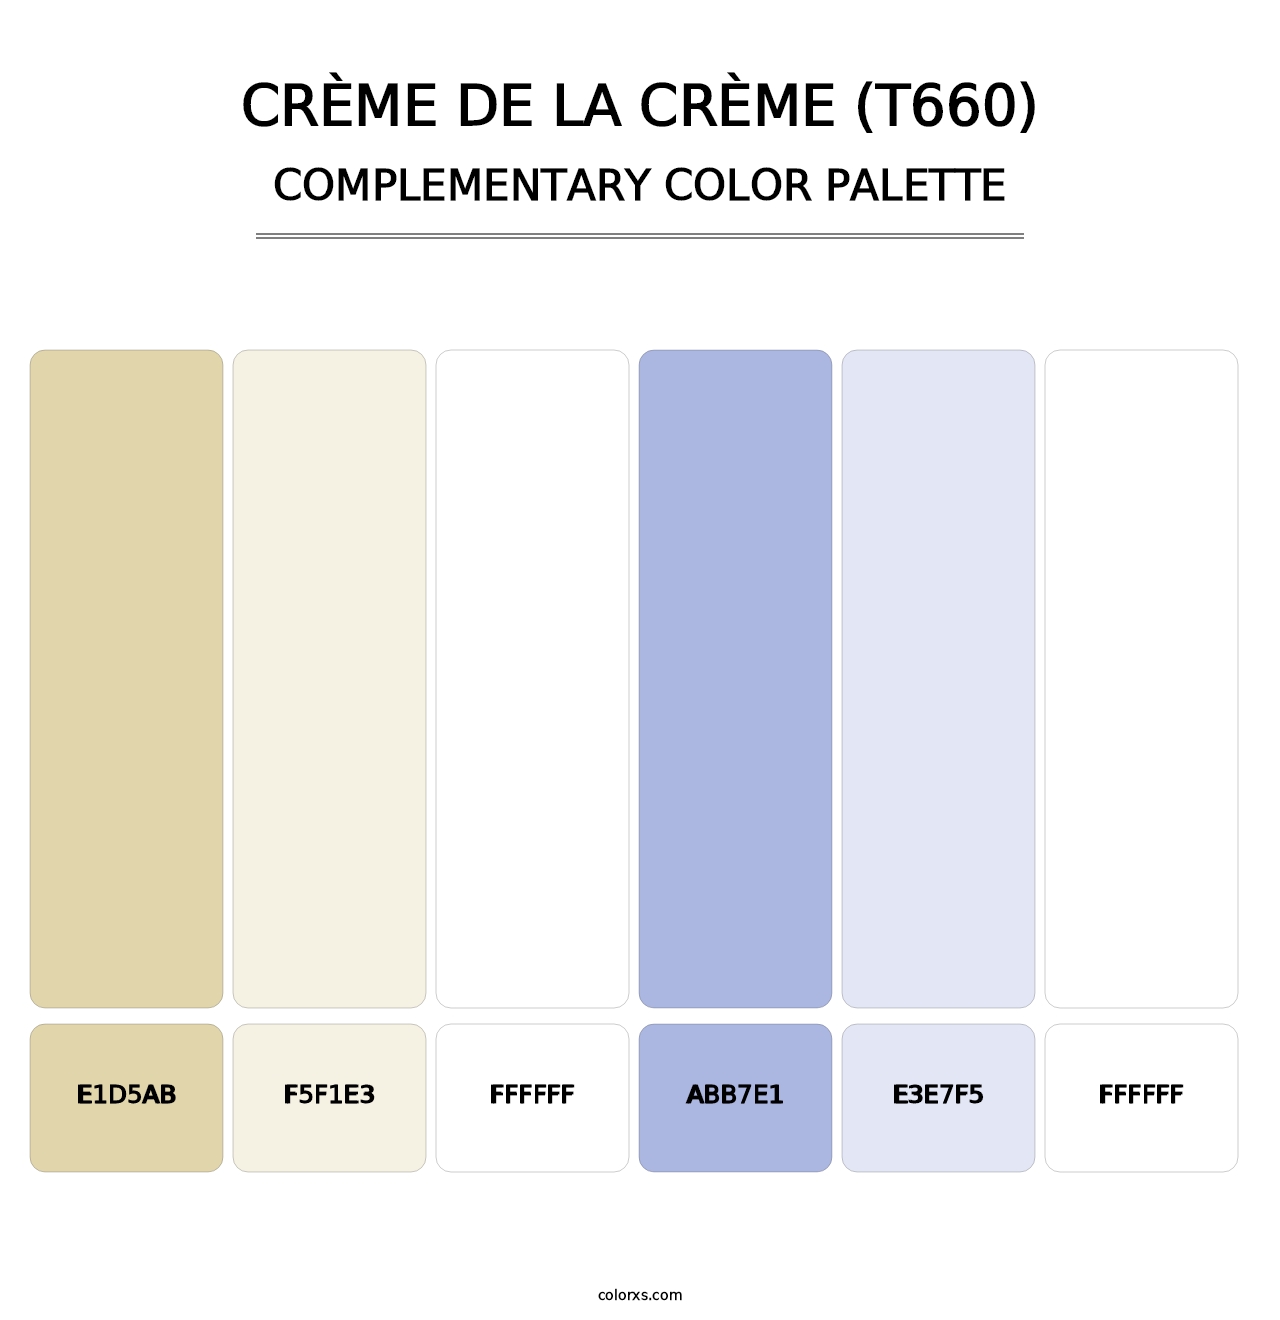 Crème de la Crème (T660) - Complementary Color Palette